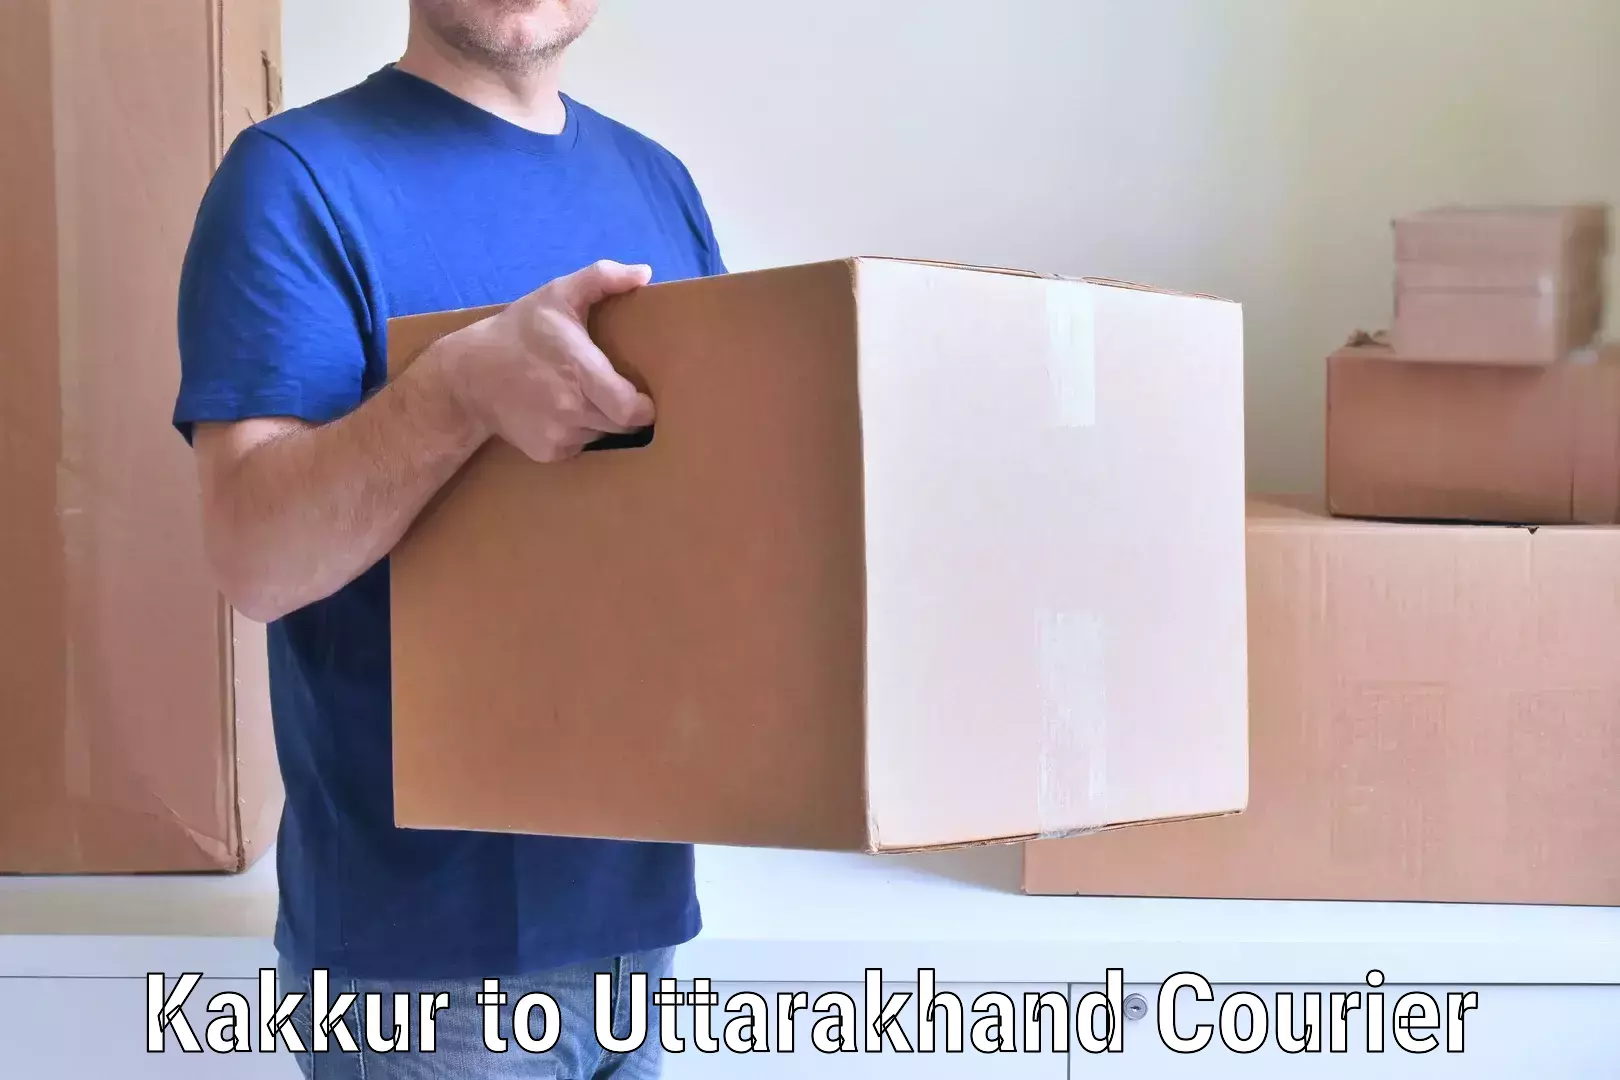 Easy furniture transport in Kakkur to Uttarakhand